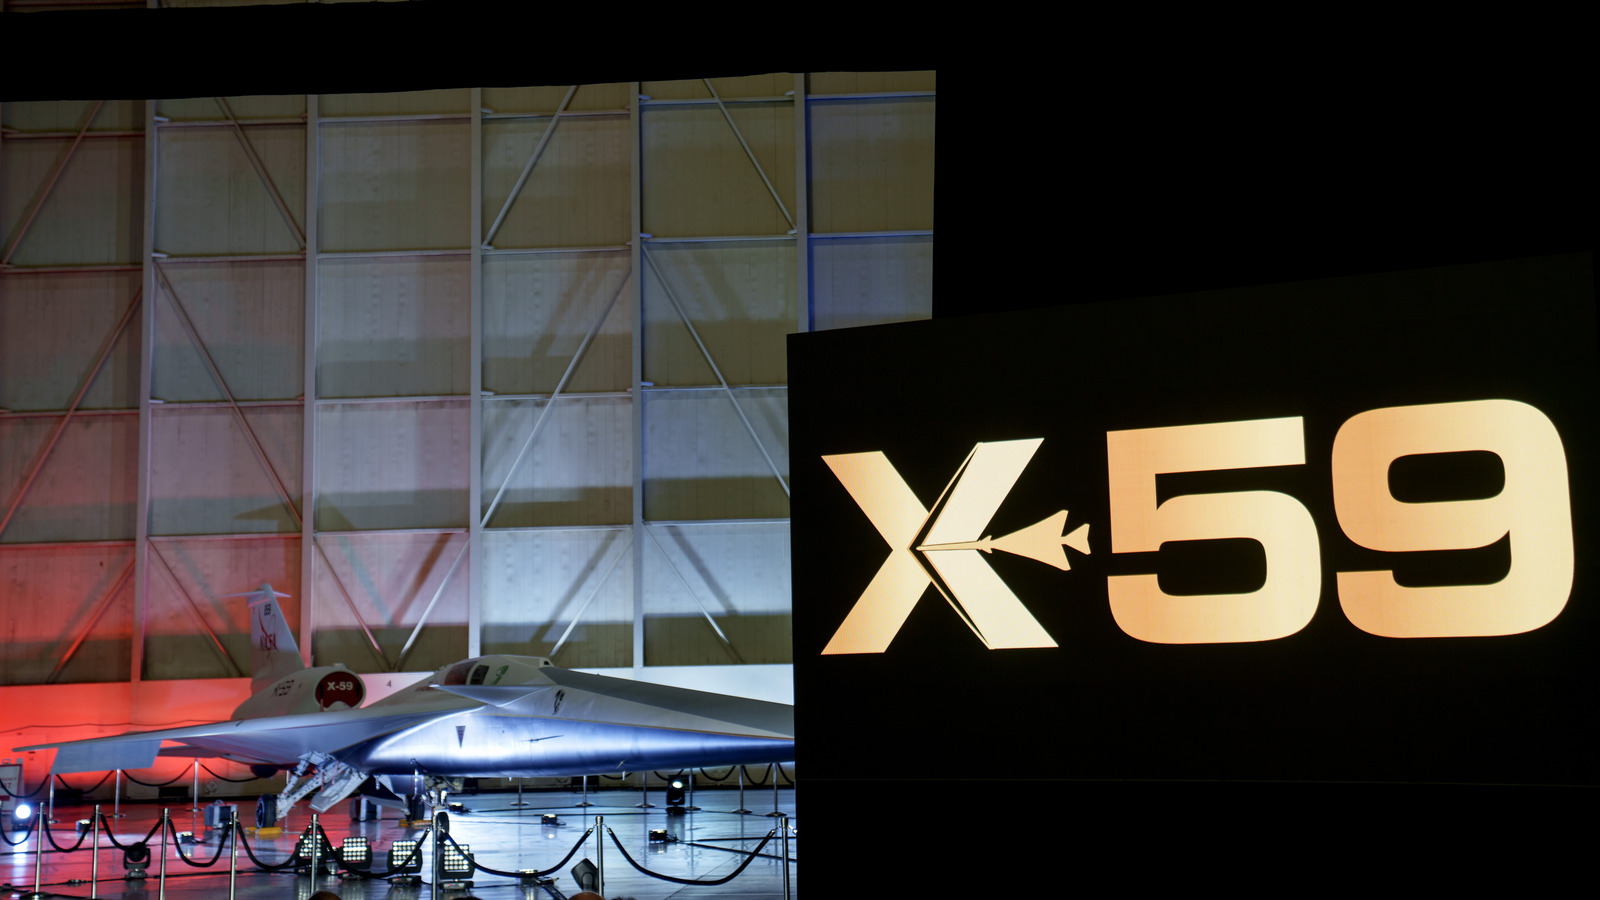 Todo lo que hay que saber sobre el nuevo avión supersónico X-59 de la NASA